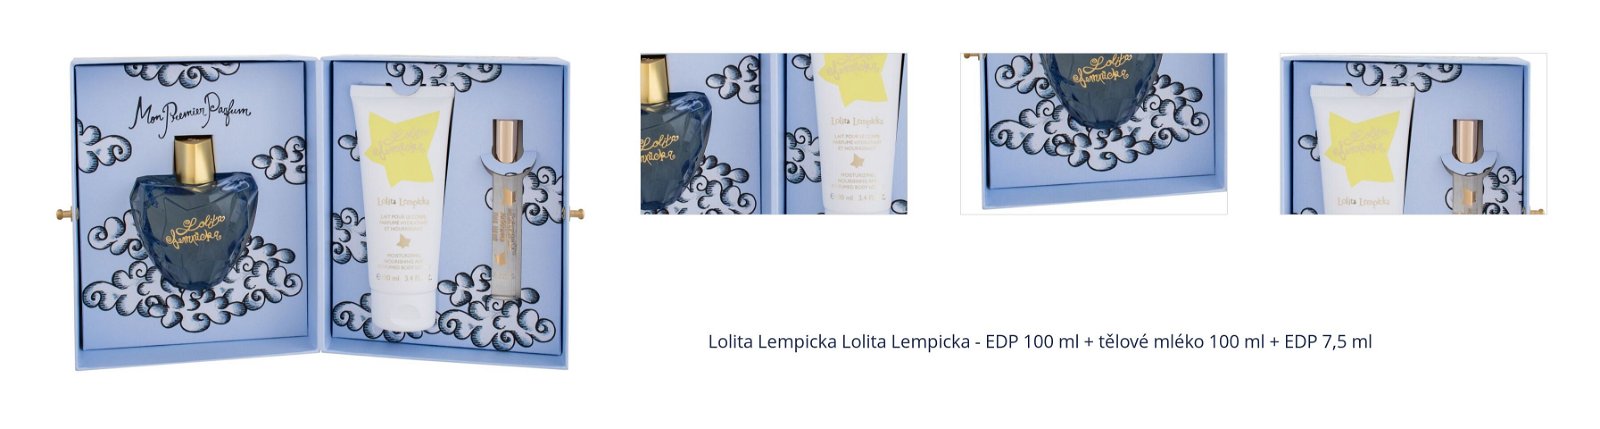 Lolita Lempicka Lolita Lempicka - EDP 100 ml + tělové mléko 100 ml + EDP 7,5 ml 1